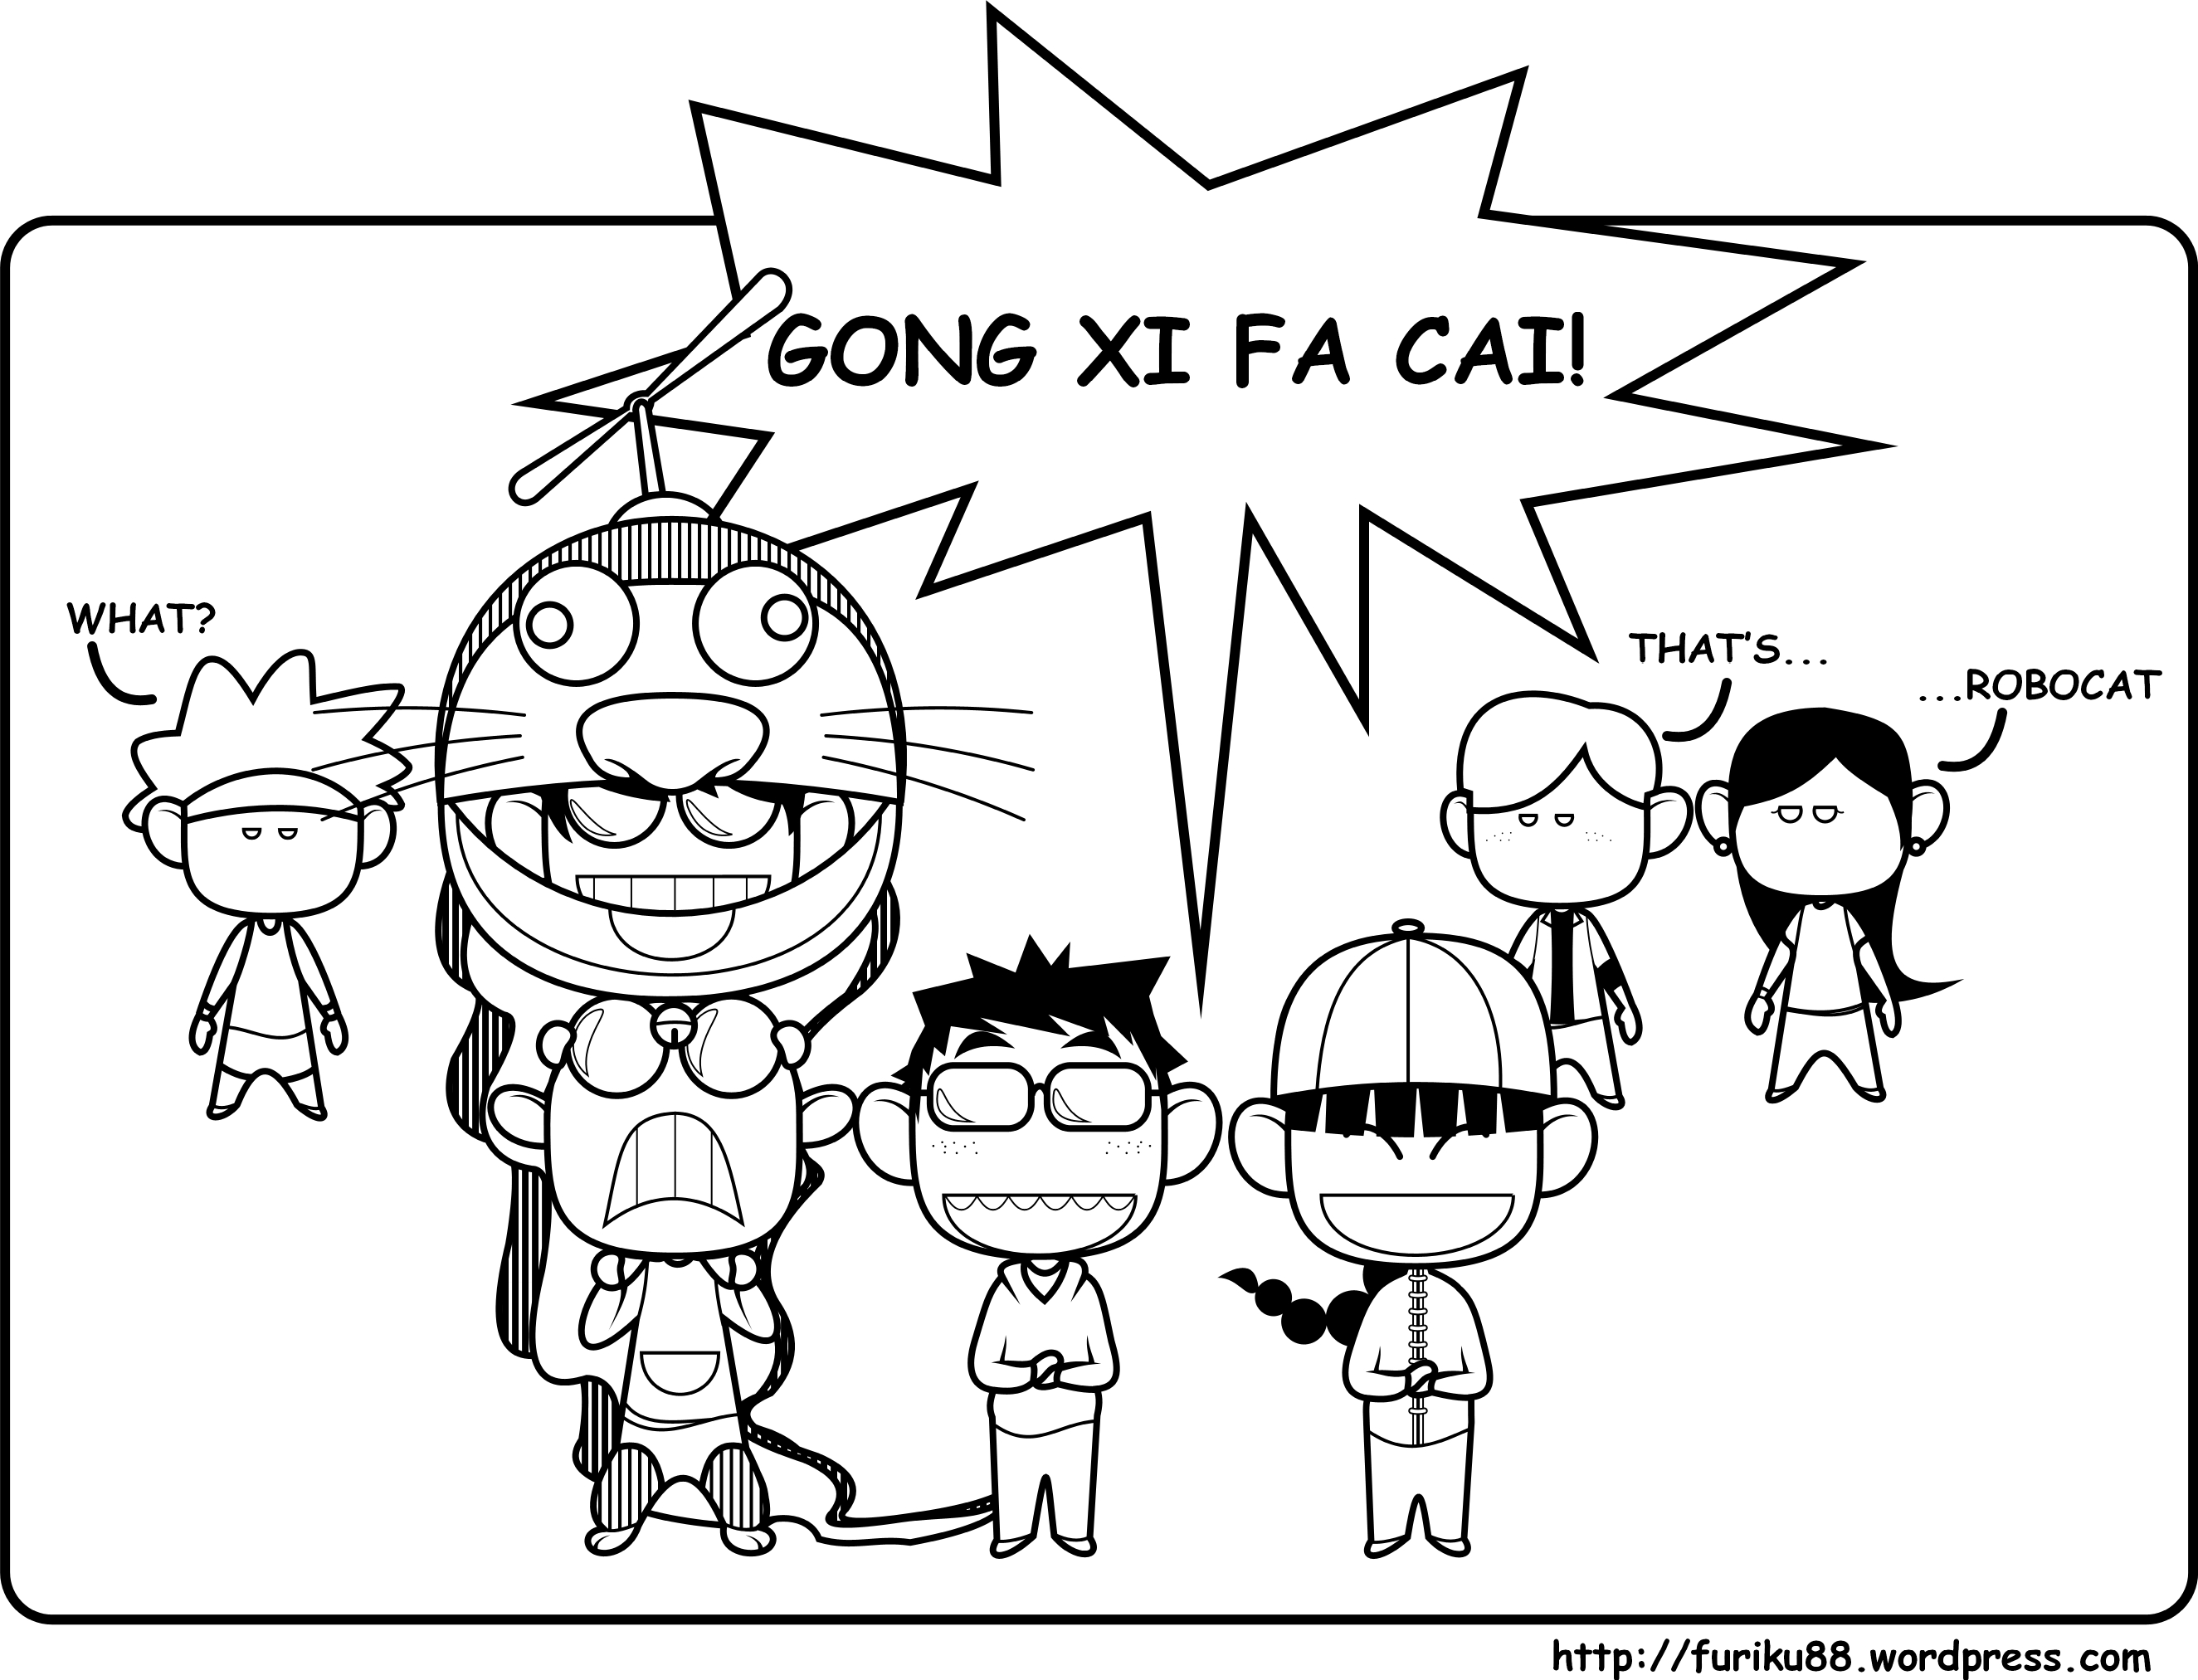 Kumpulan Meme Lucu Gong Xi Fat Cai Kumpulan Gambar DP BBM